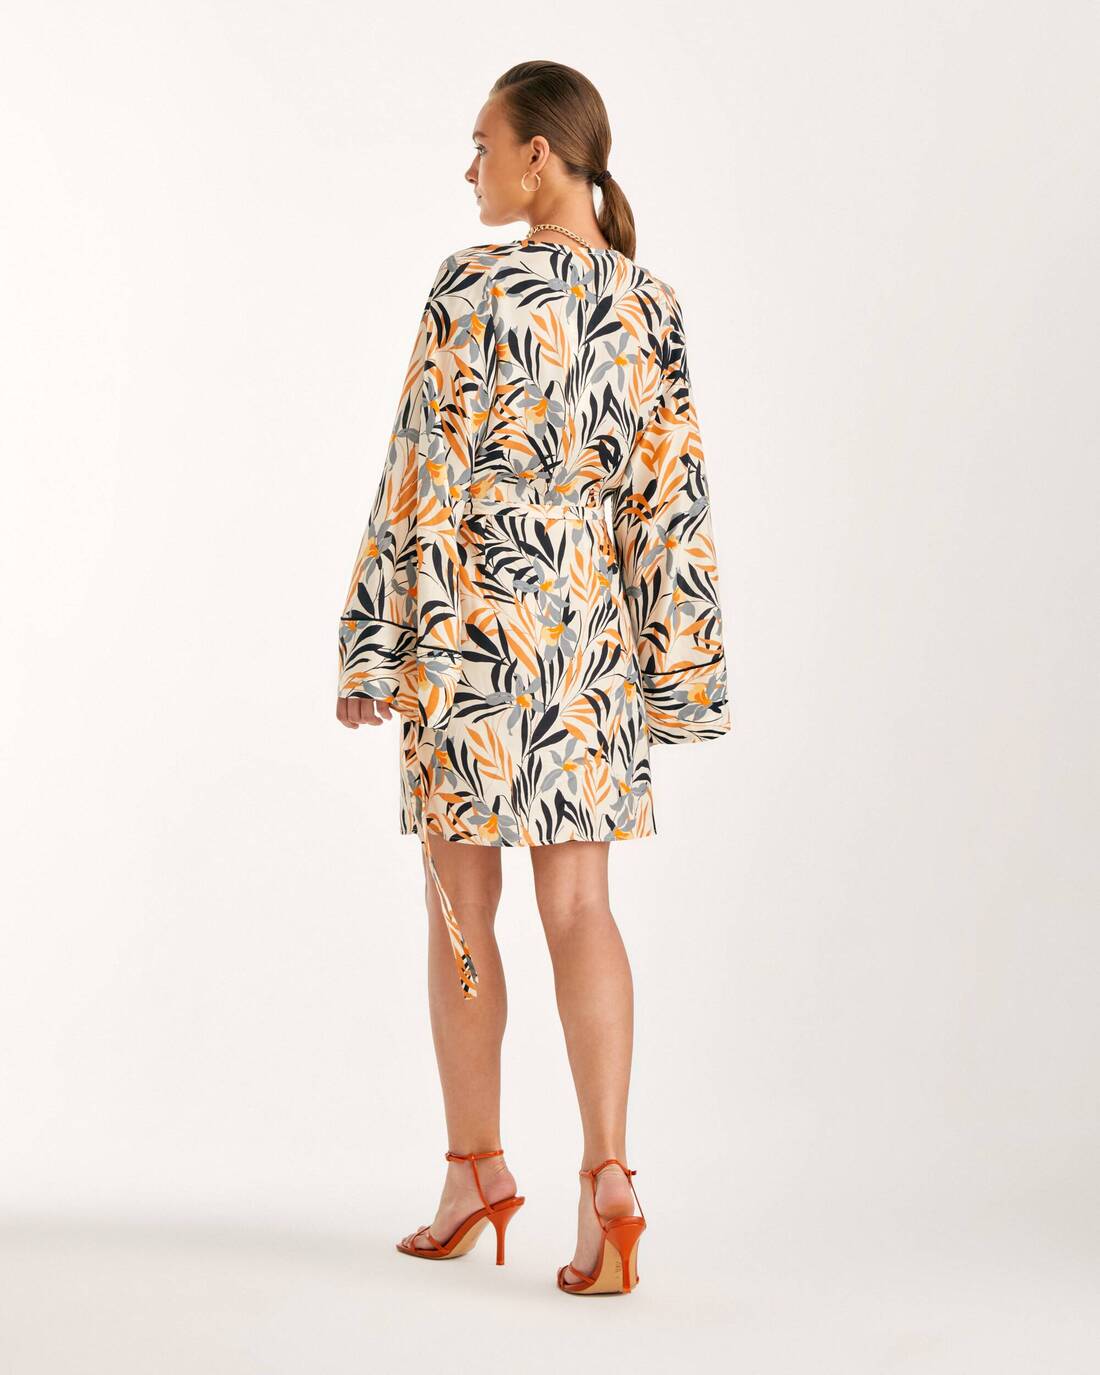 Kimono dress in designer print 